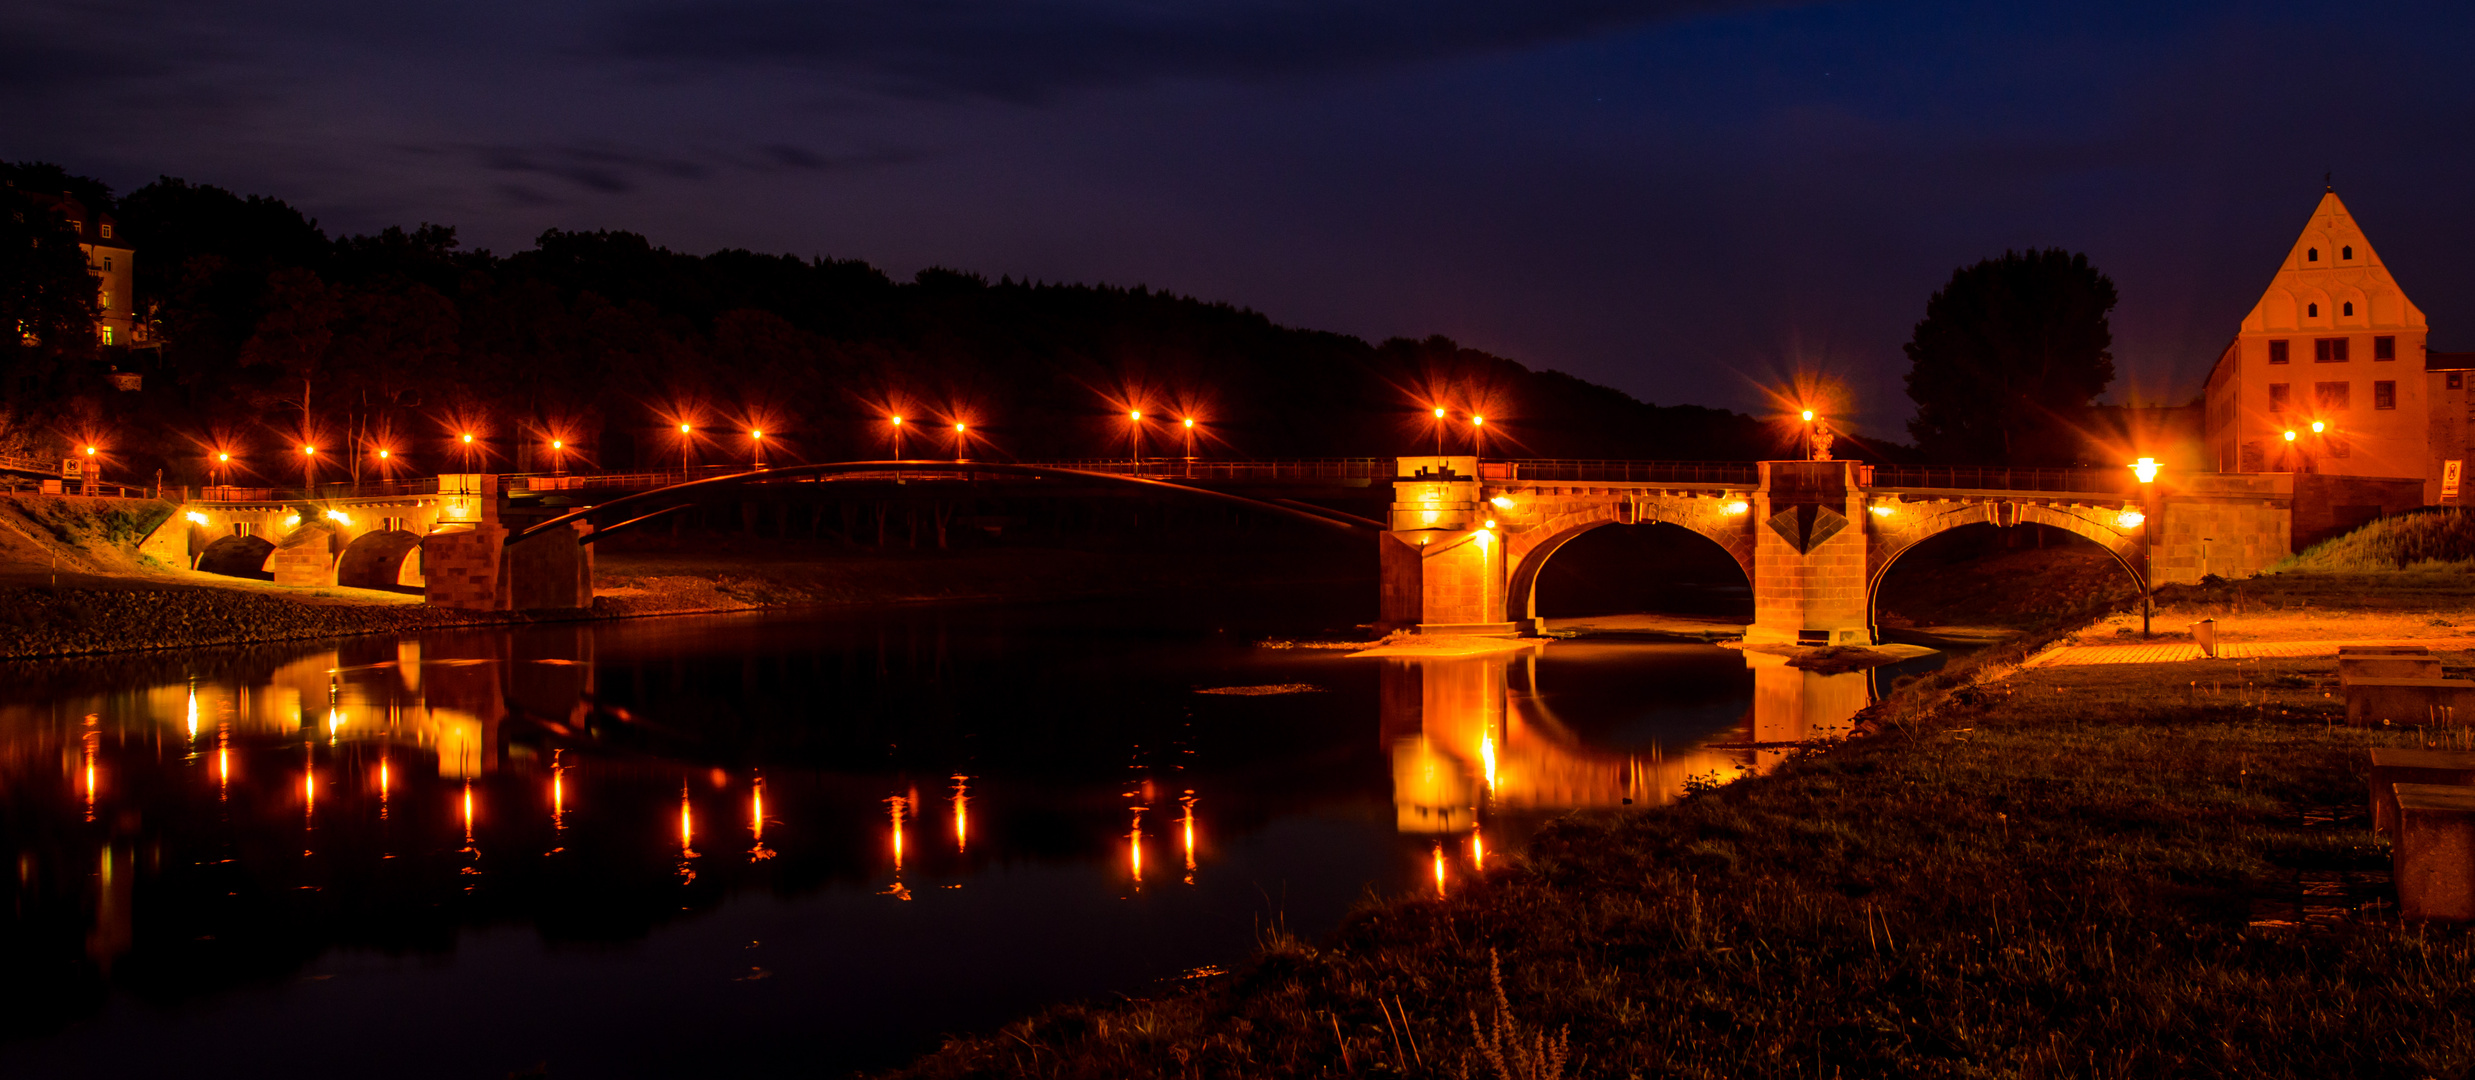 Pöppelmannbrücke bei Nacht